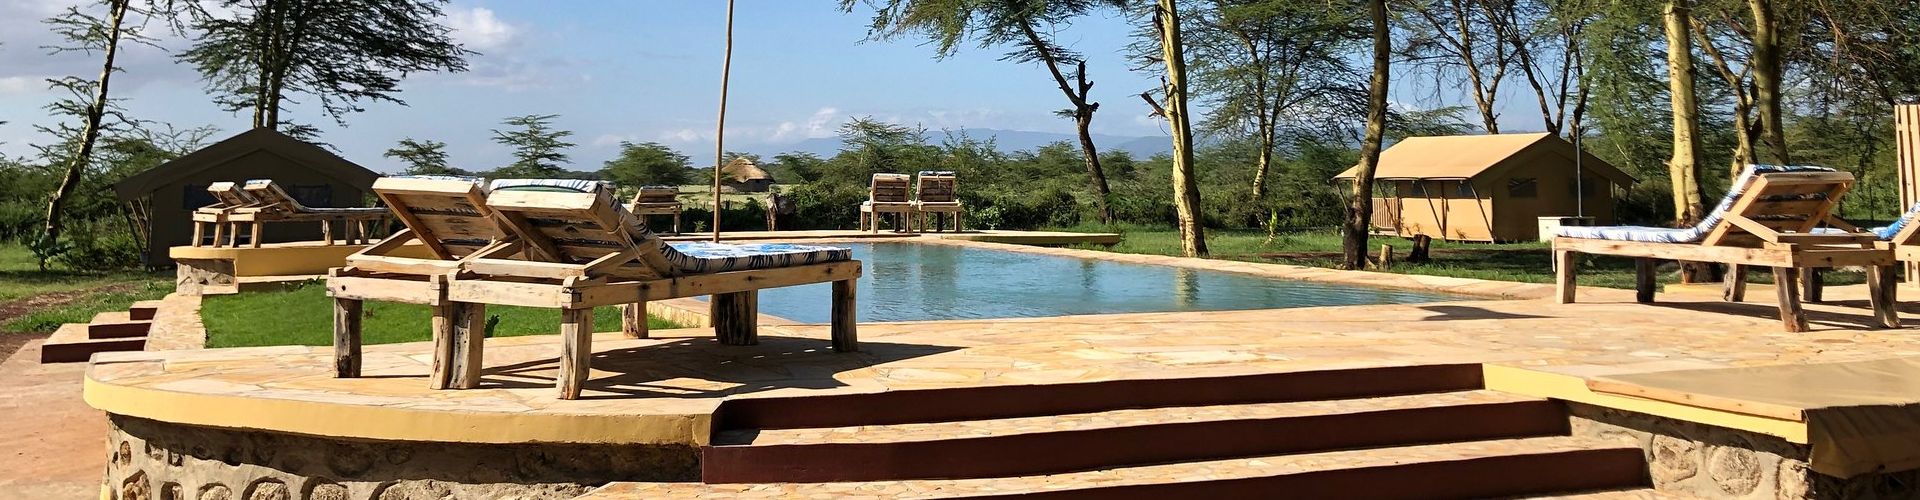 Tuffatevi in una bella piscina dopo un lungo viaggio in questo alloggio Africa Safari